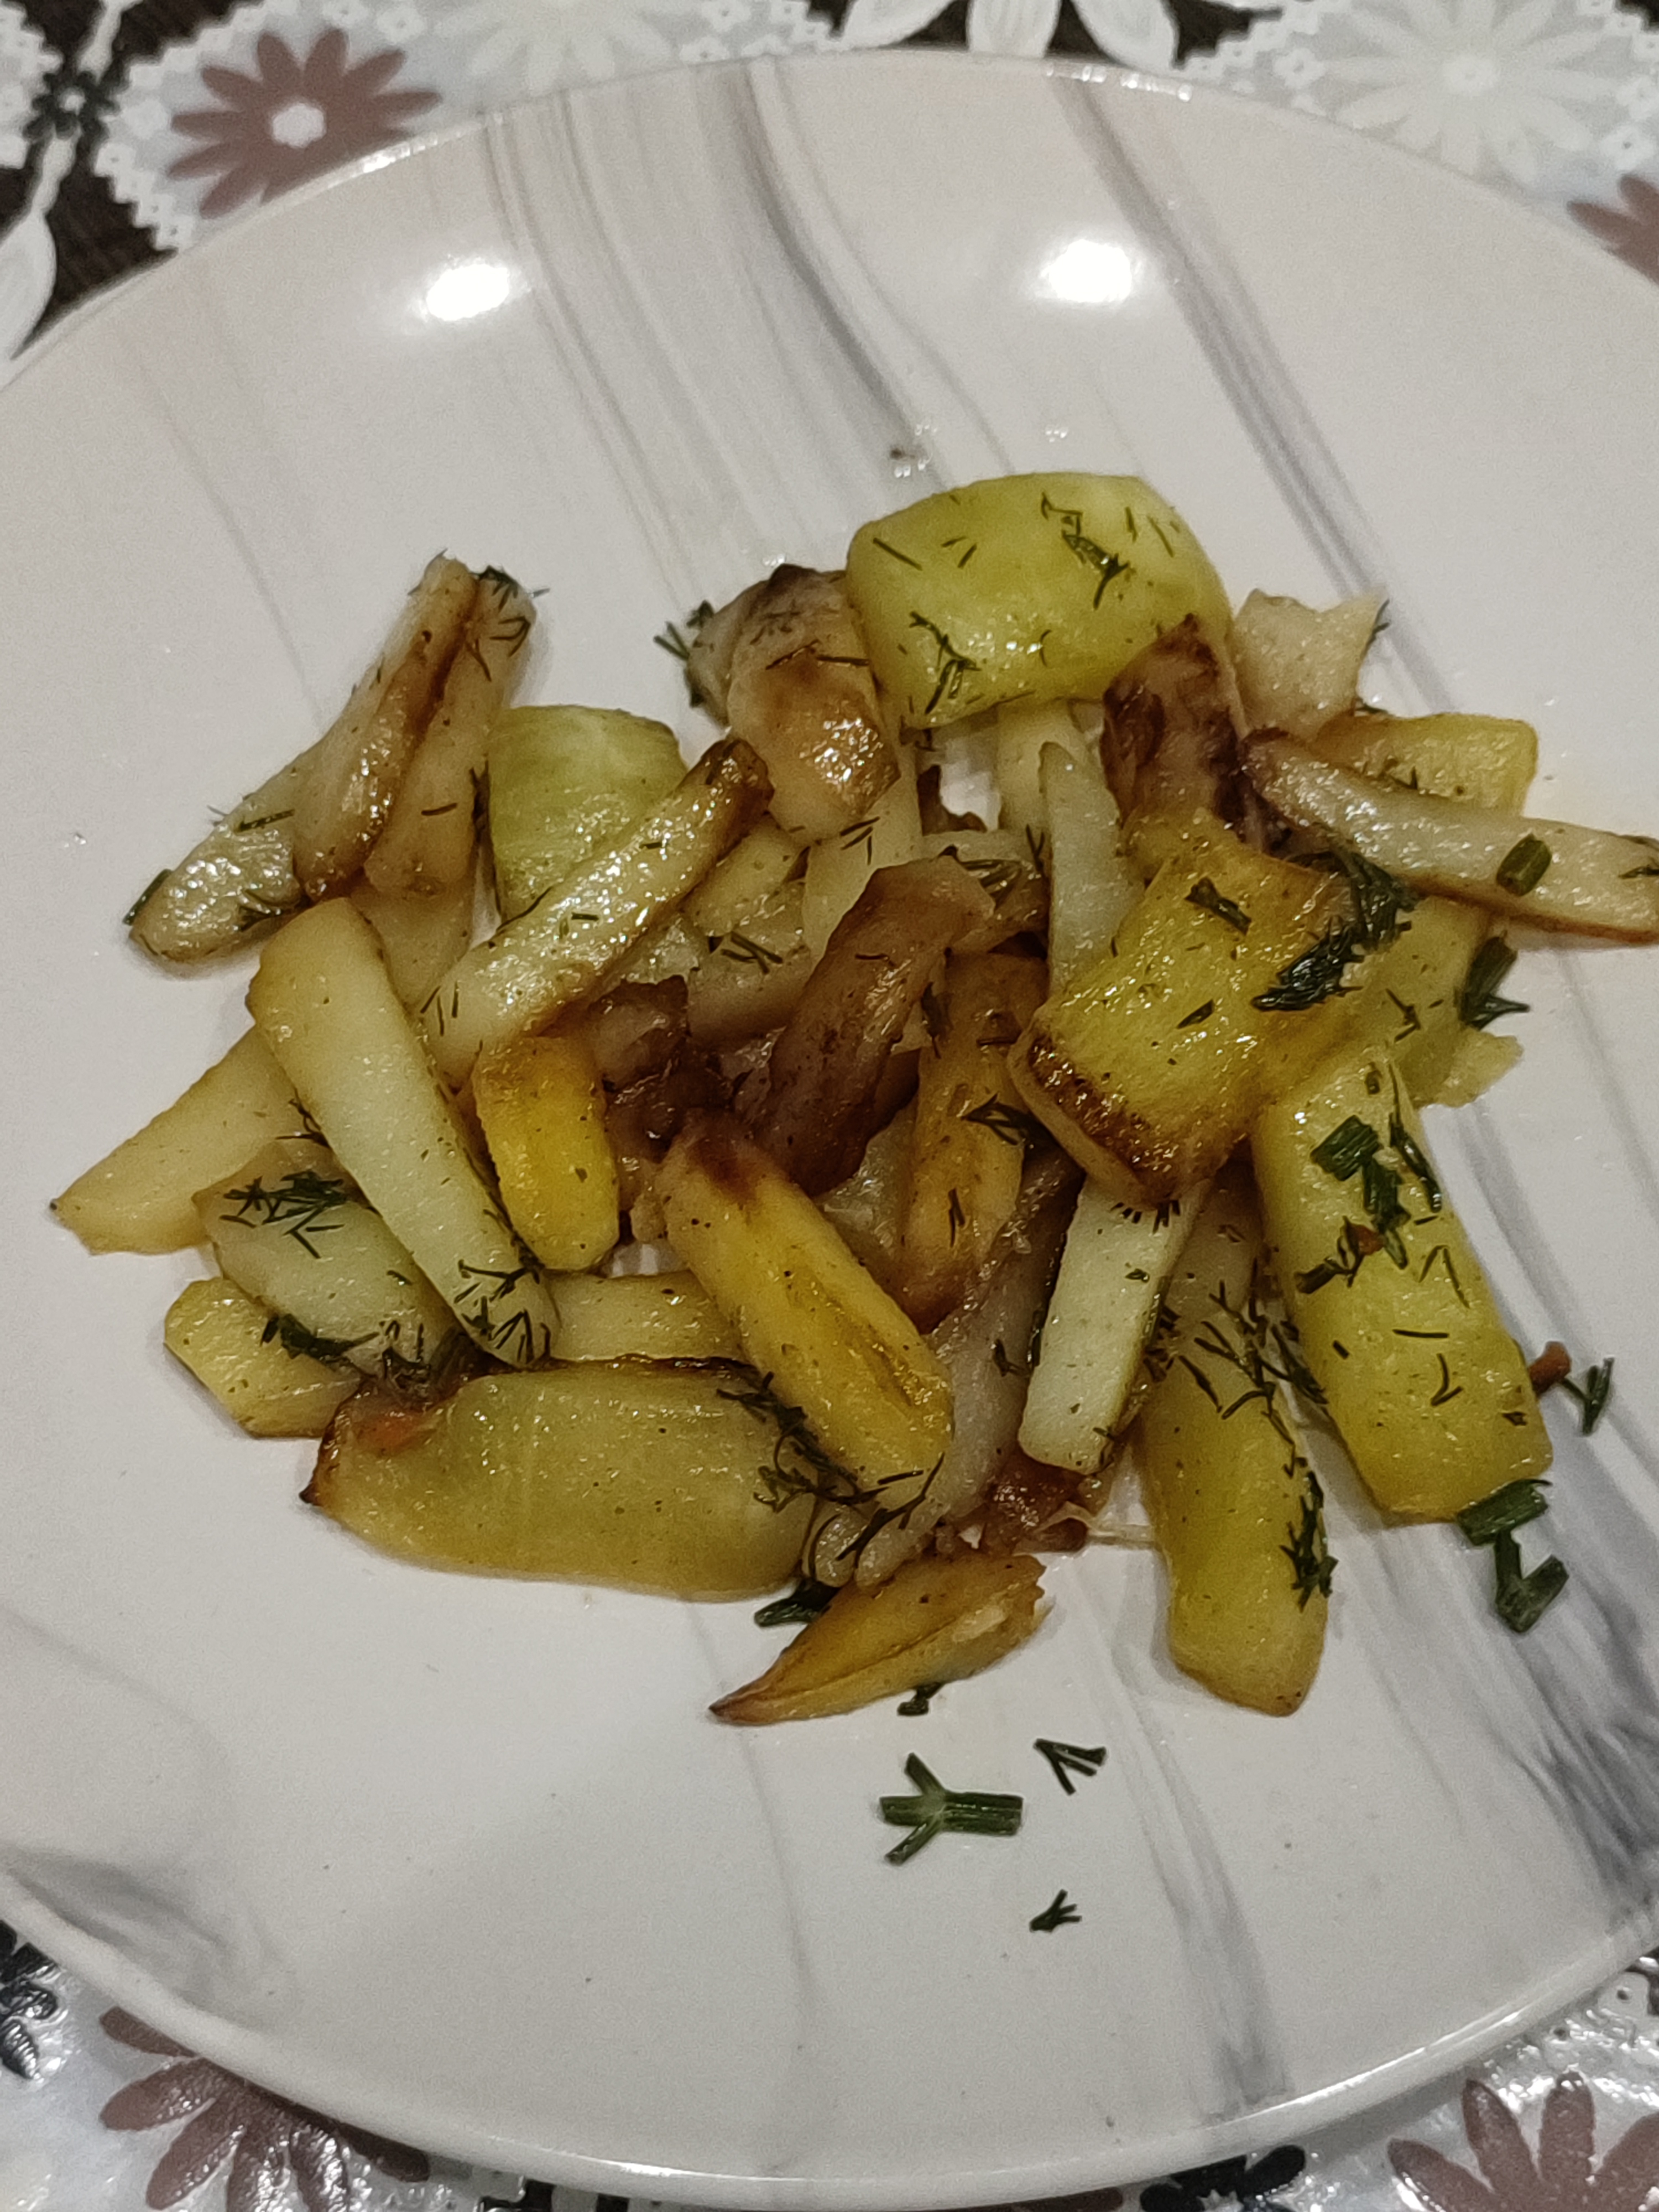 Жареная картошка с кабачками